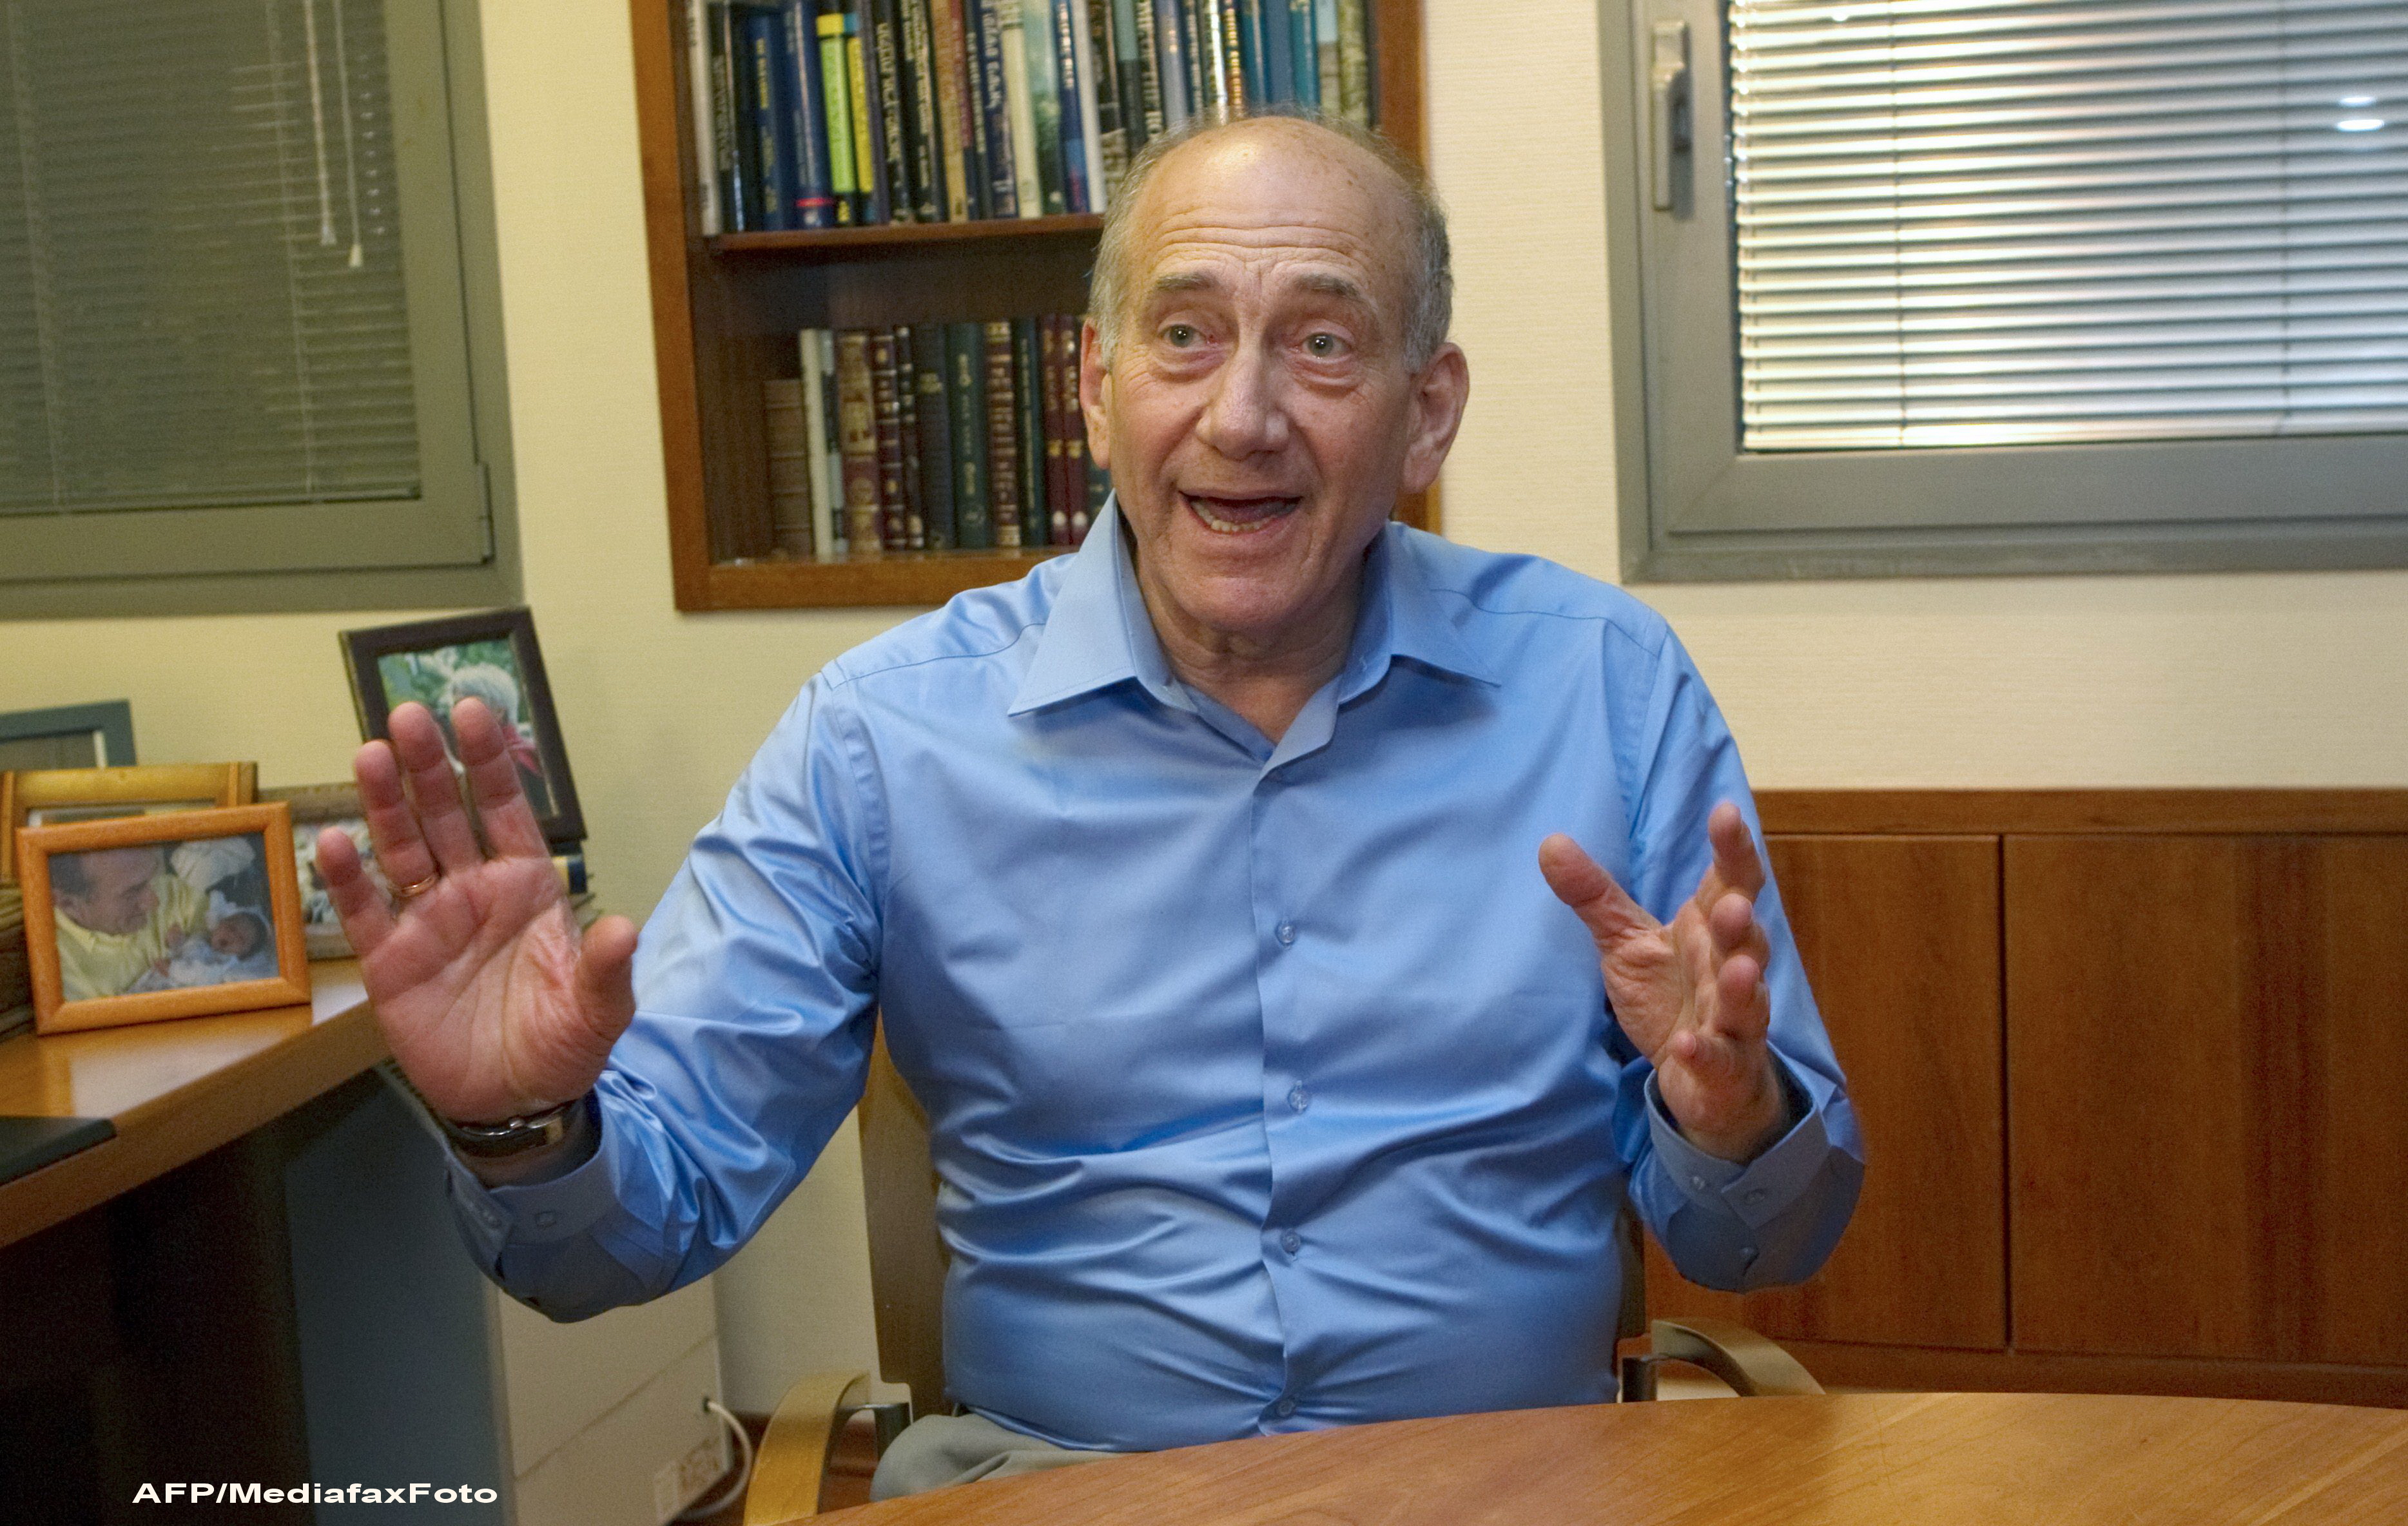 Ehud Olmert, fost premier al Israelului, a fost pus sub acuzare pentru coruptie